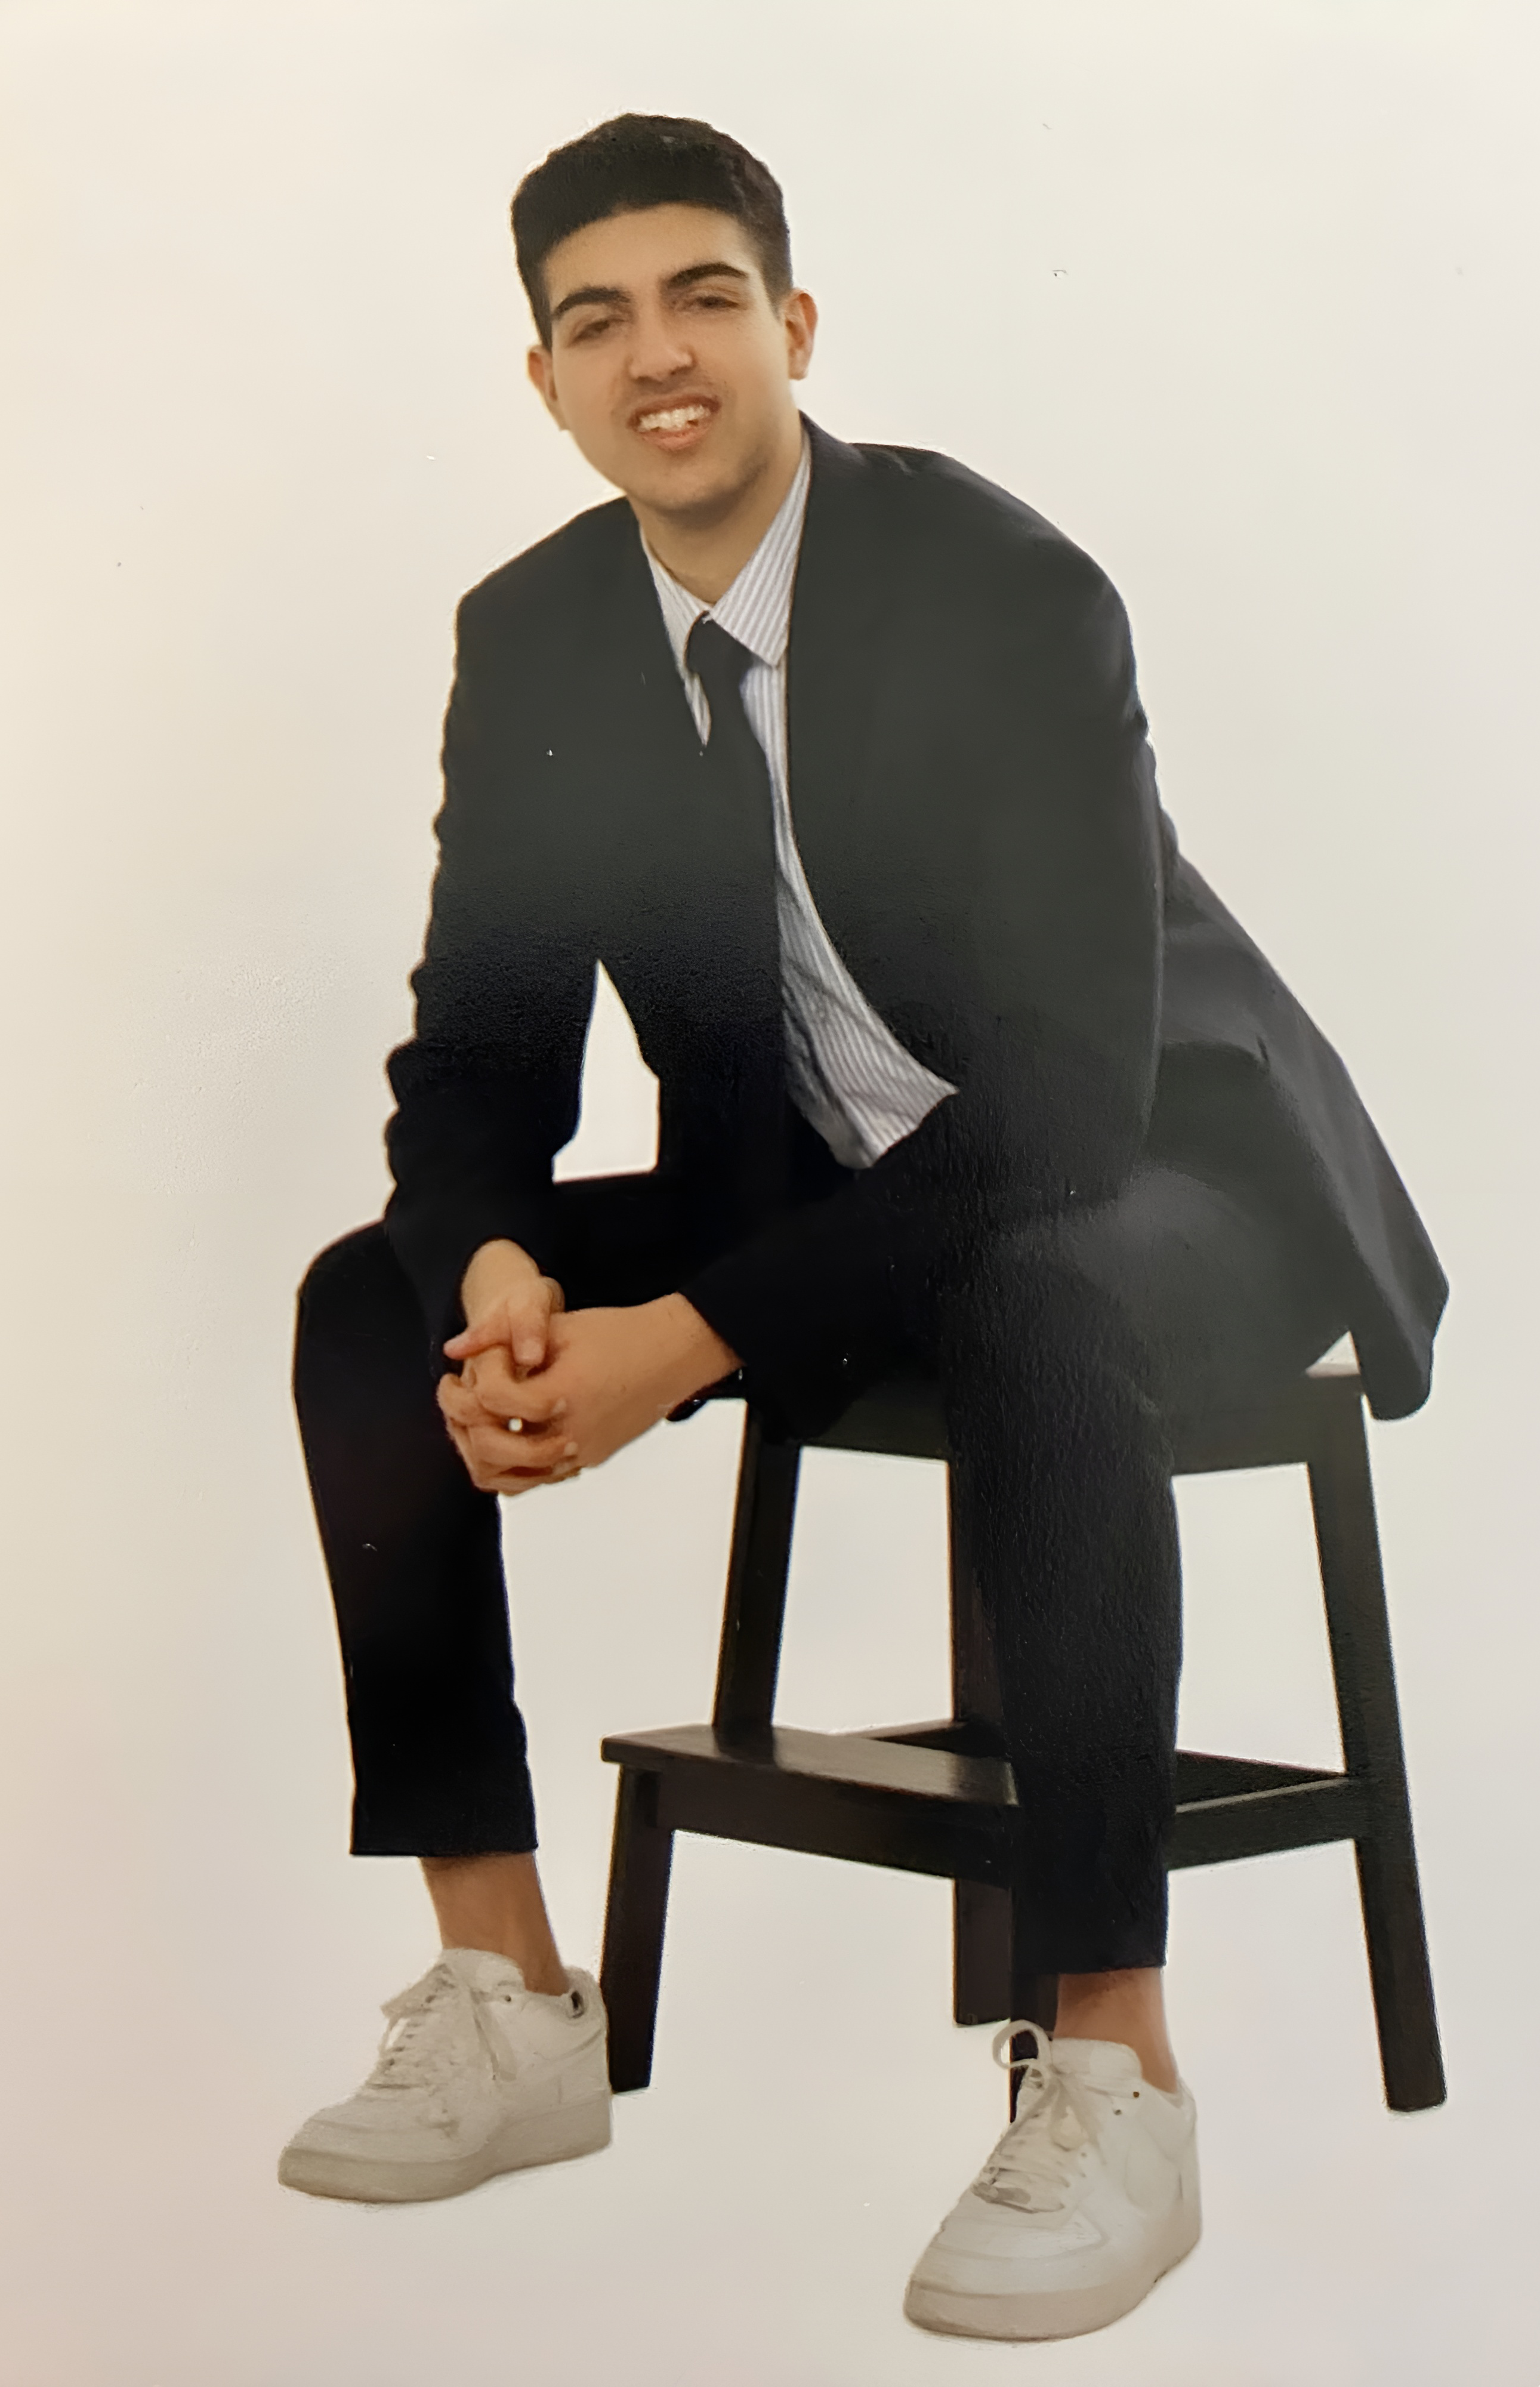 Une photo professionnelle d’Aidan. Il porte un costume et une cravate noirs ainsi qu’une paire de chaussures blanches. Il est assis sur un tabouret, les mains croisées sur les genoux.